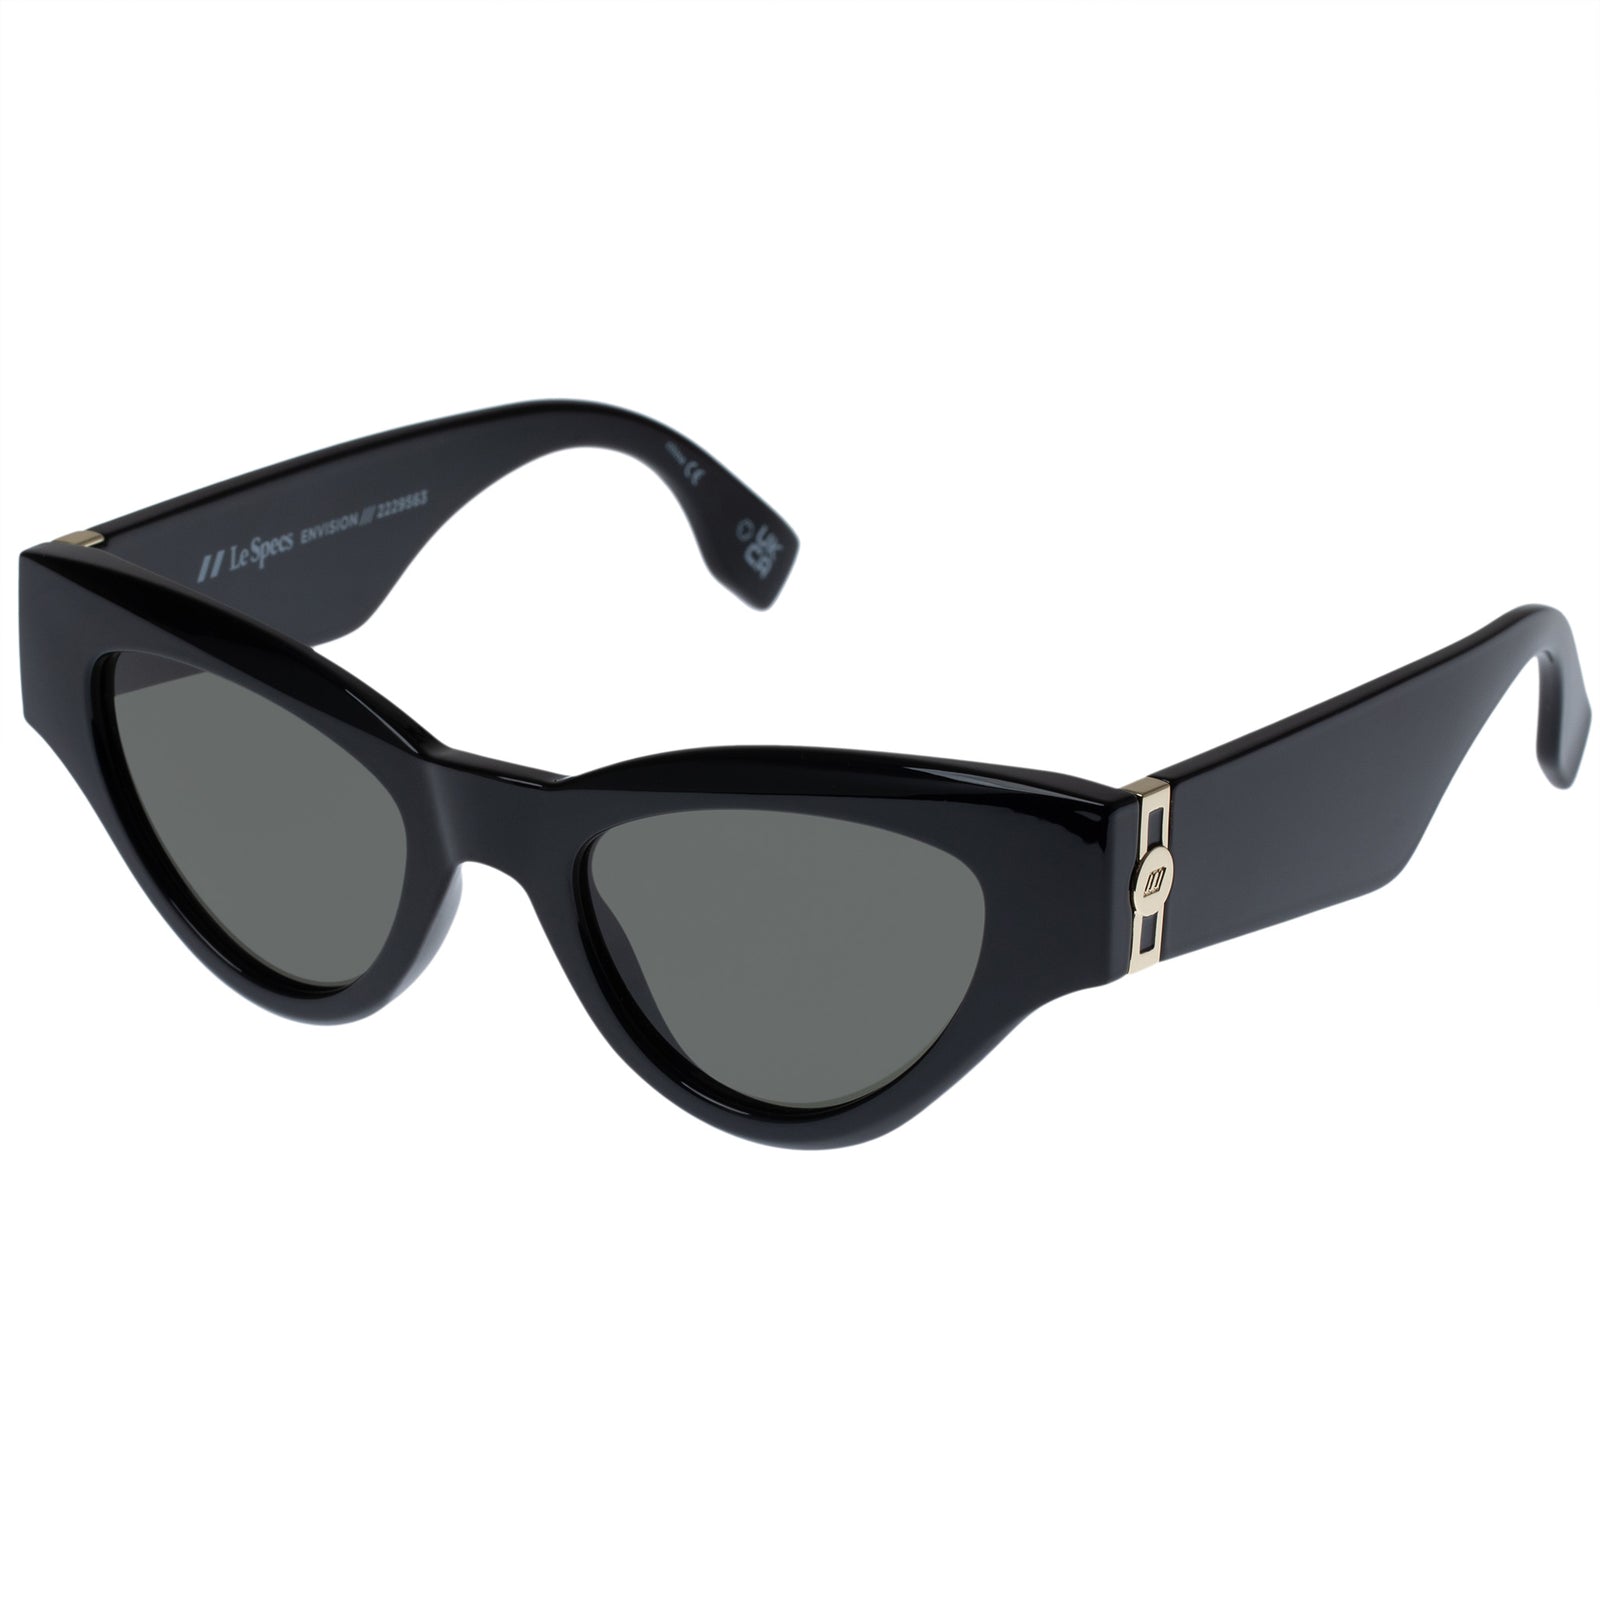 Hello Lover Oversized Square Cateye Sunglasses Black